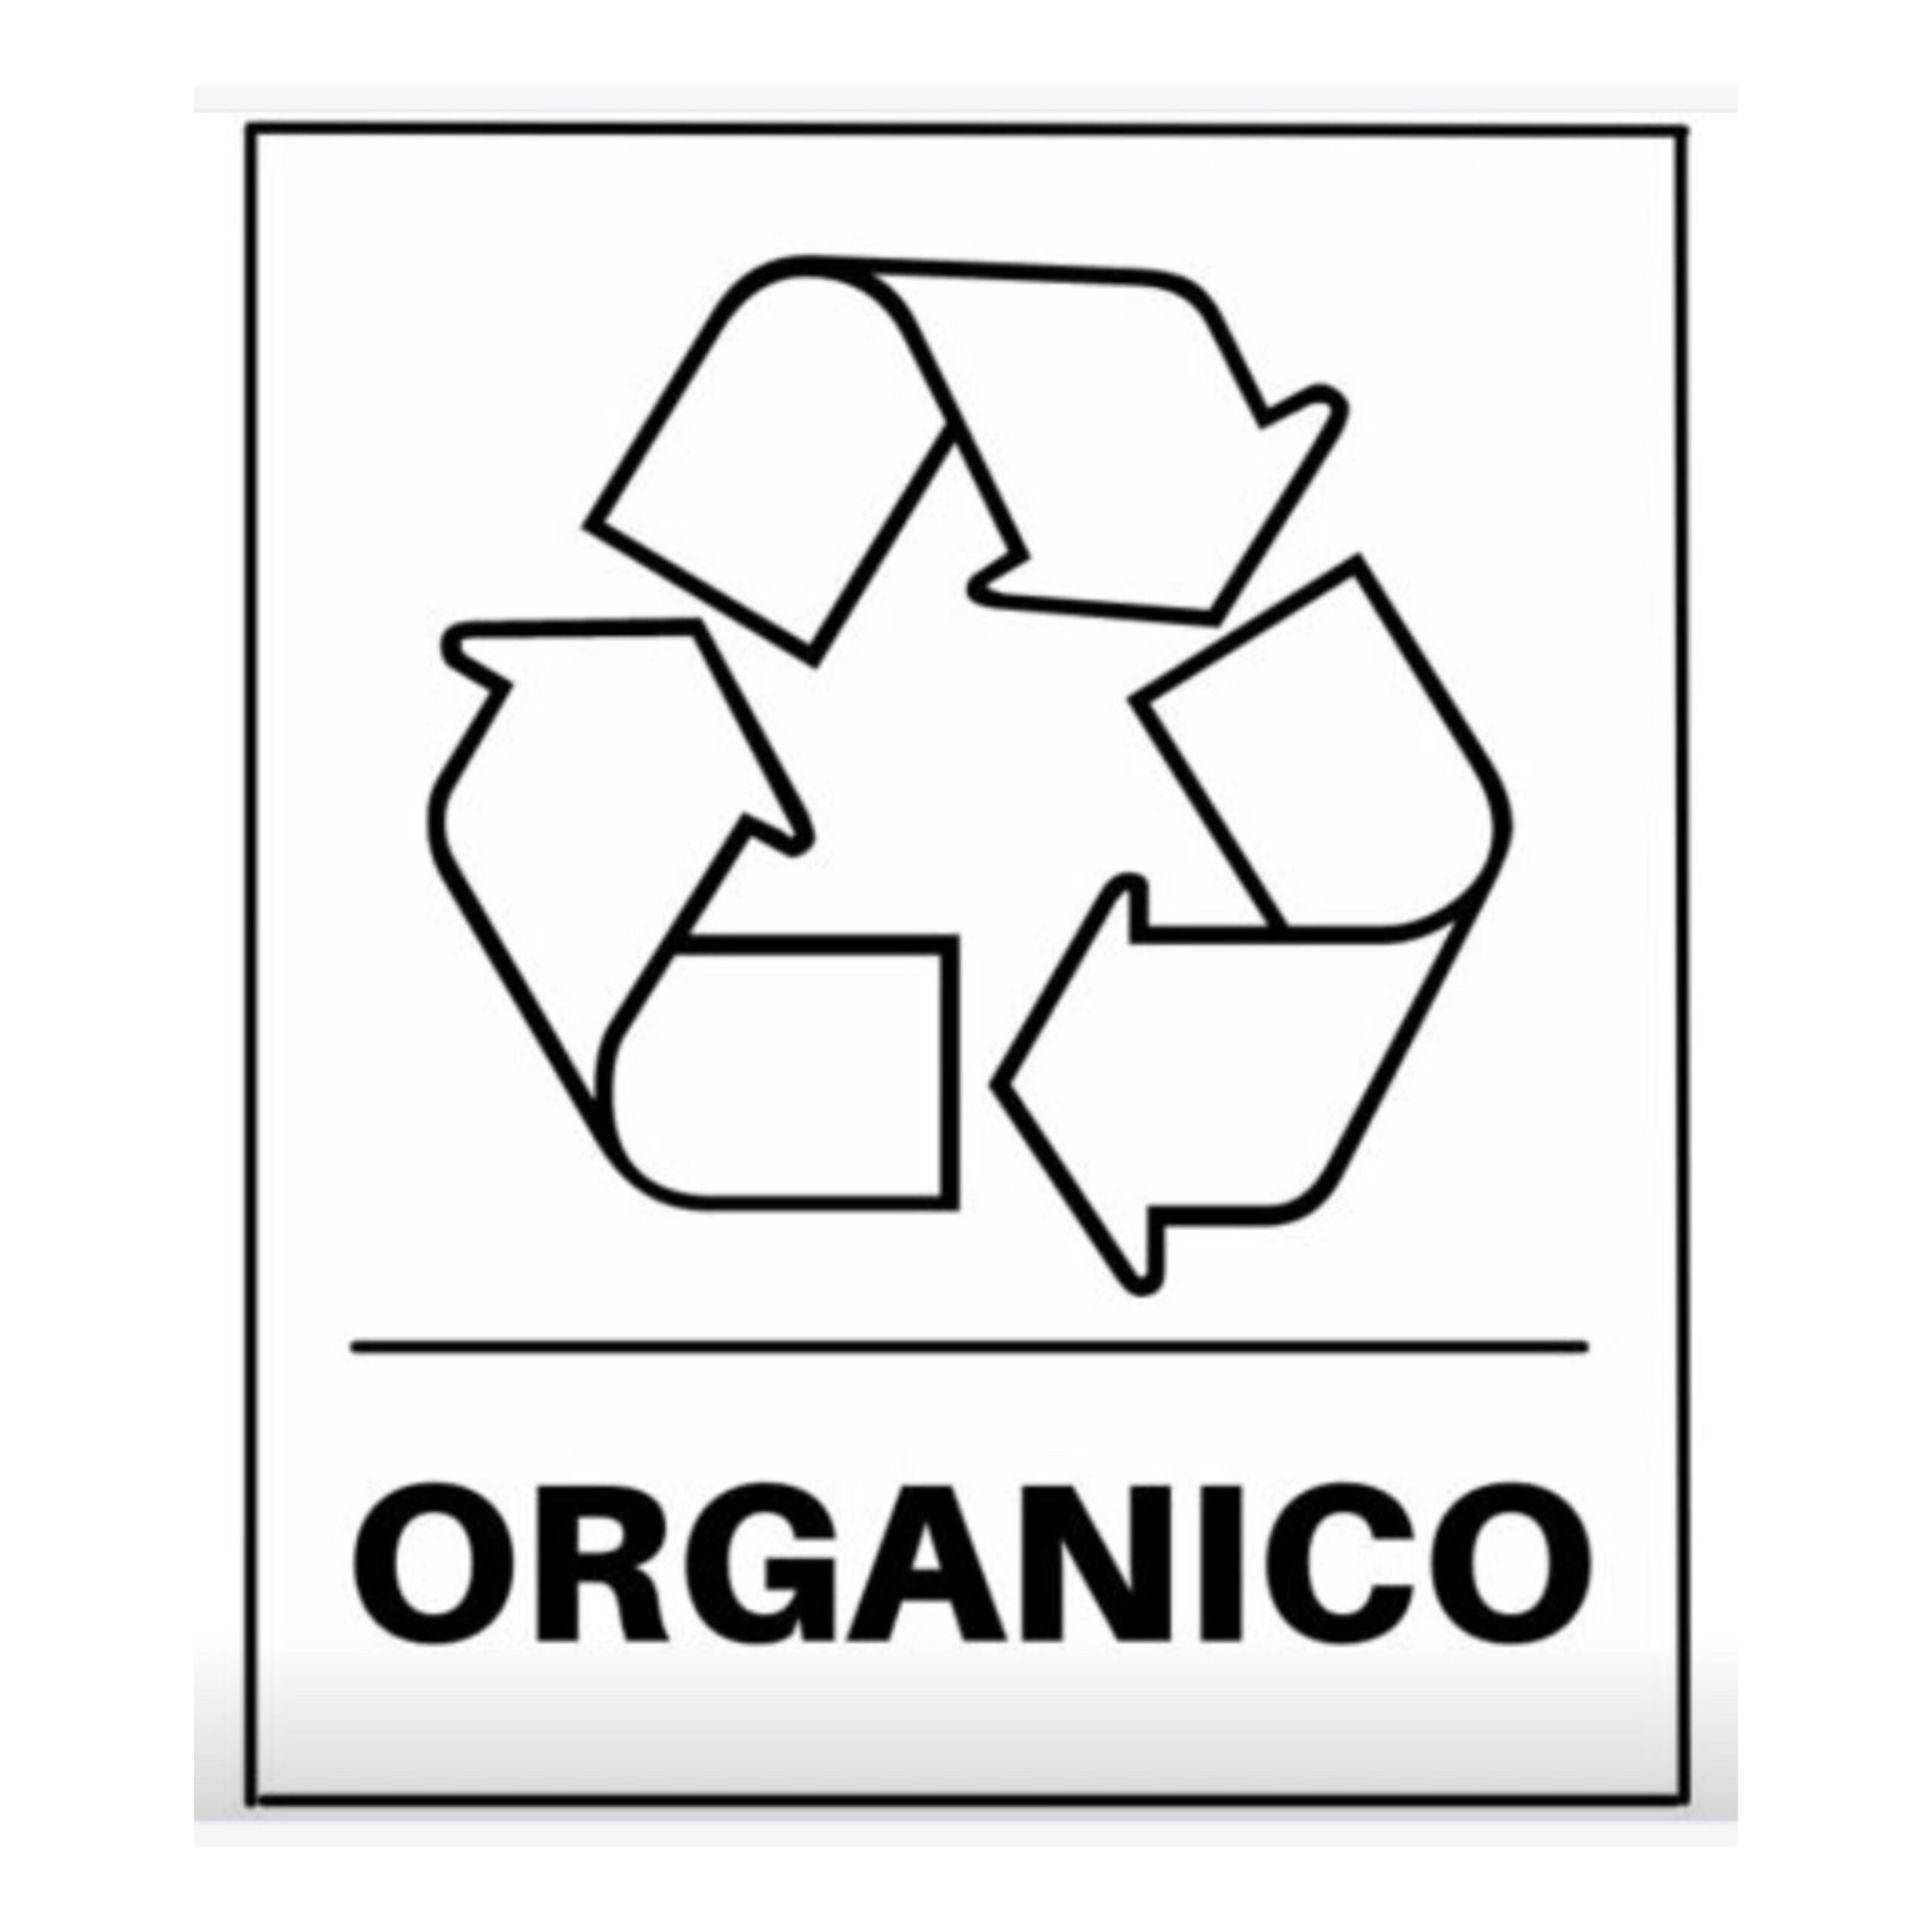 raccolta differenziata: Organico